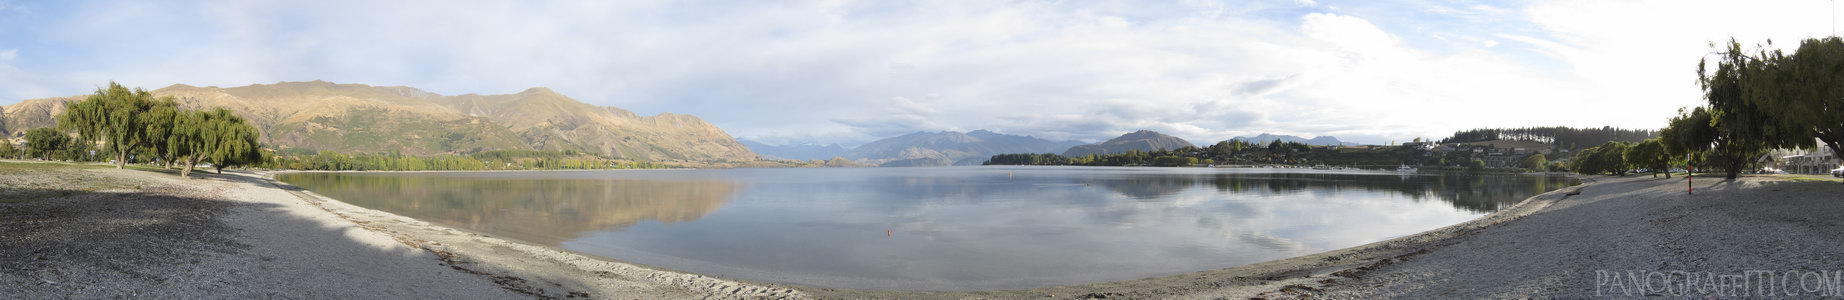 Mount Aspiring Across Lake Wanaka - Wanaka, Otago, New Zealand